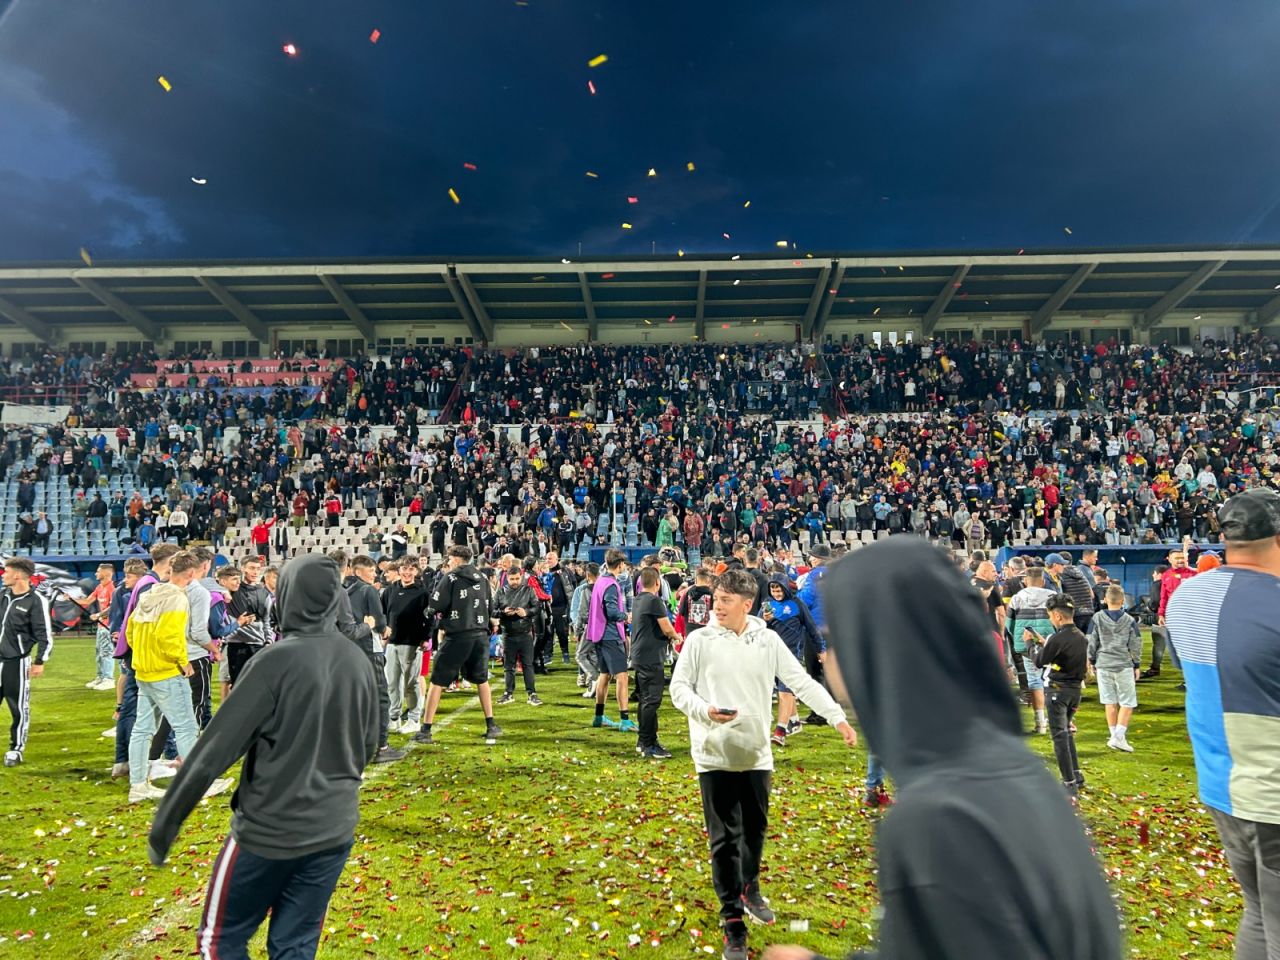 Sărbătoare la Buzău! Fotbaliștii s-au bucurat alături de fani în urma promovării istorice. Vali Dumitrache: ”Am muncit un an pentru asta”_36